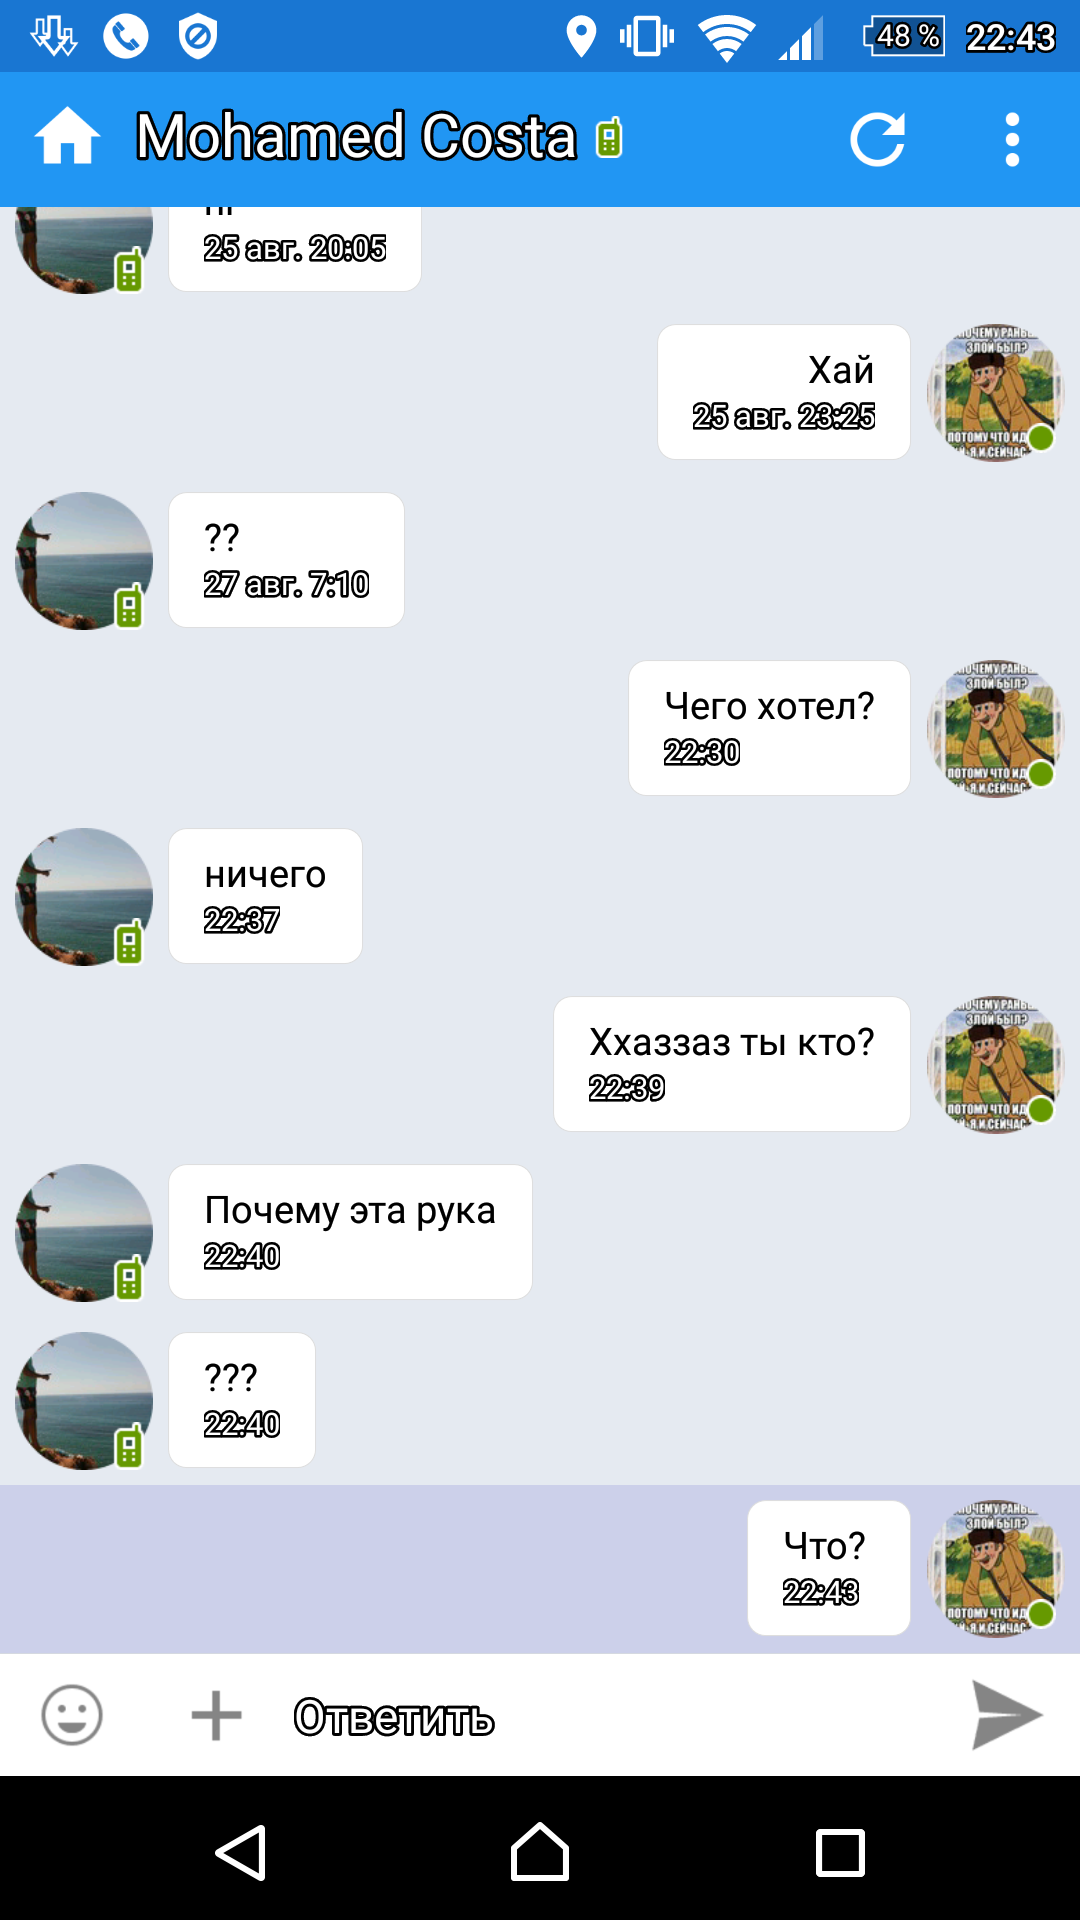 Саяногорск Инфо - screenshot_20160828-224352.png, Скачано: 515